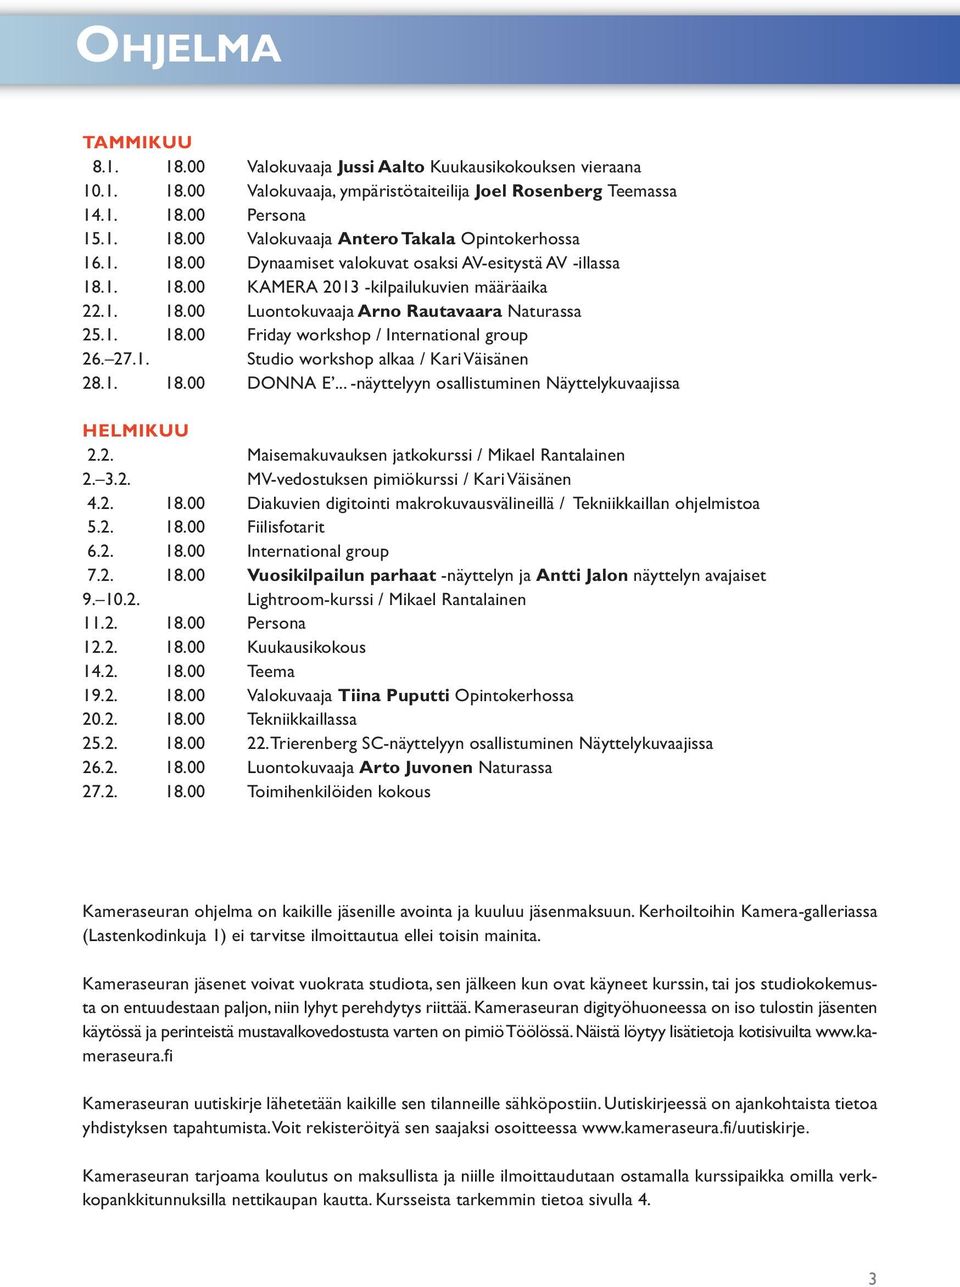 27.1. Studio workshop alkaa / Kari Väisänen 28.1. 18.00 DONNA E... -näyttelyyn osallistuminen Näyttelykuvaajissa HELMIKUU 2.2. Maisemakuvauksen jatkokurssi / Mikael Rantalainen 2. 3.2. MV-vedostuksen pimiökurssi / Kari Väisänen 4.